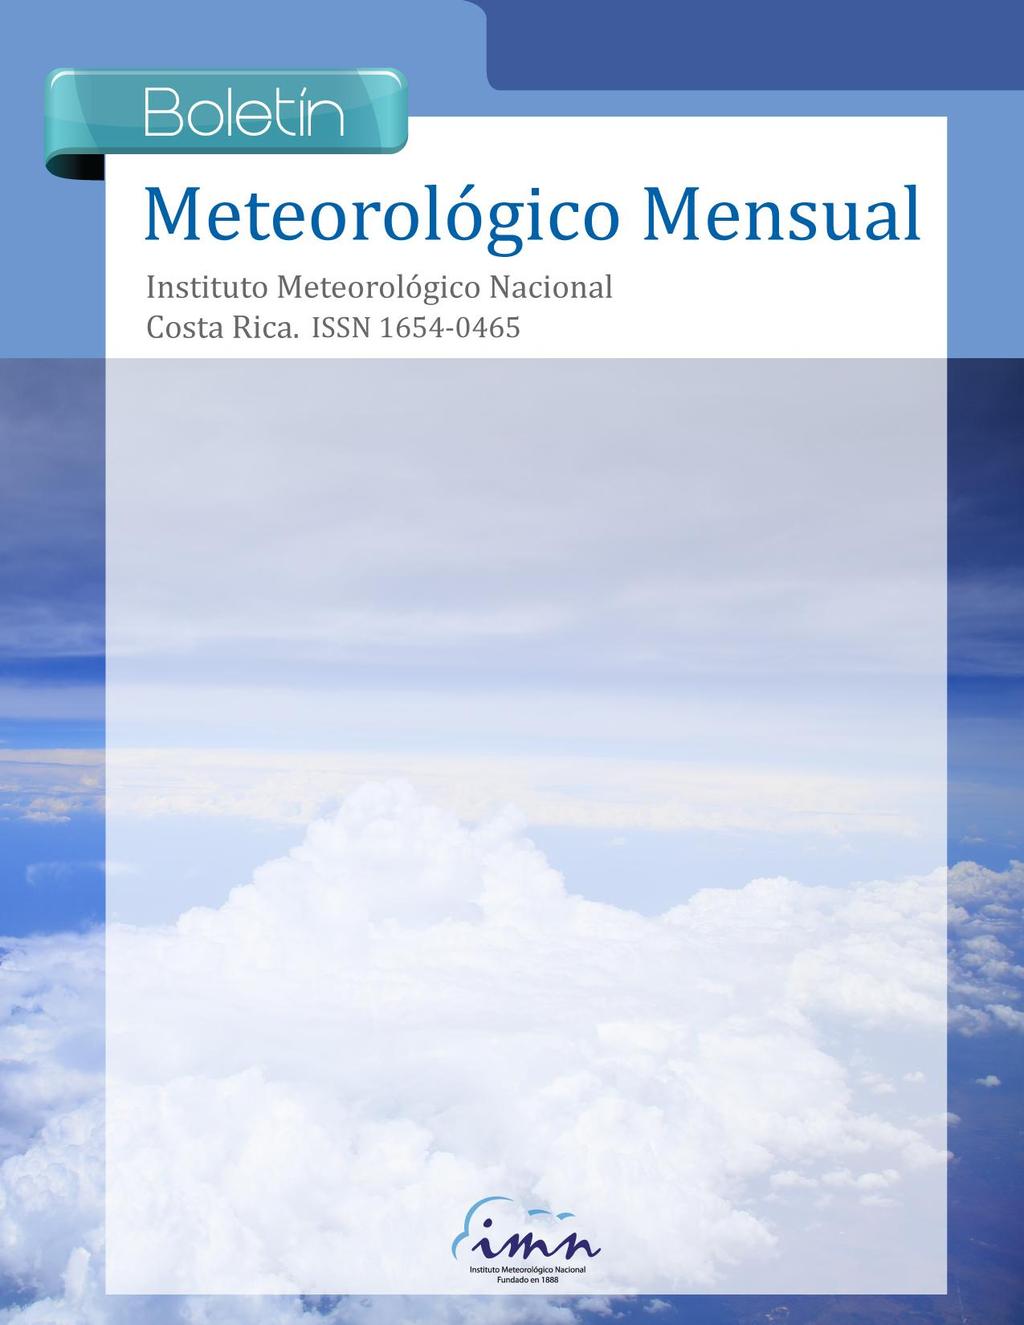 1 Resumen Meteorológico Boletín Junio Meteorológico 213 Mensual Contenido Página Resumen Meteorológico Mensual...2 Información Climática Estaciones termopluviométricas.